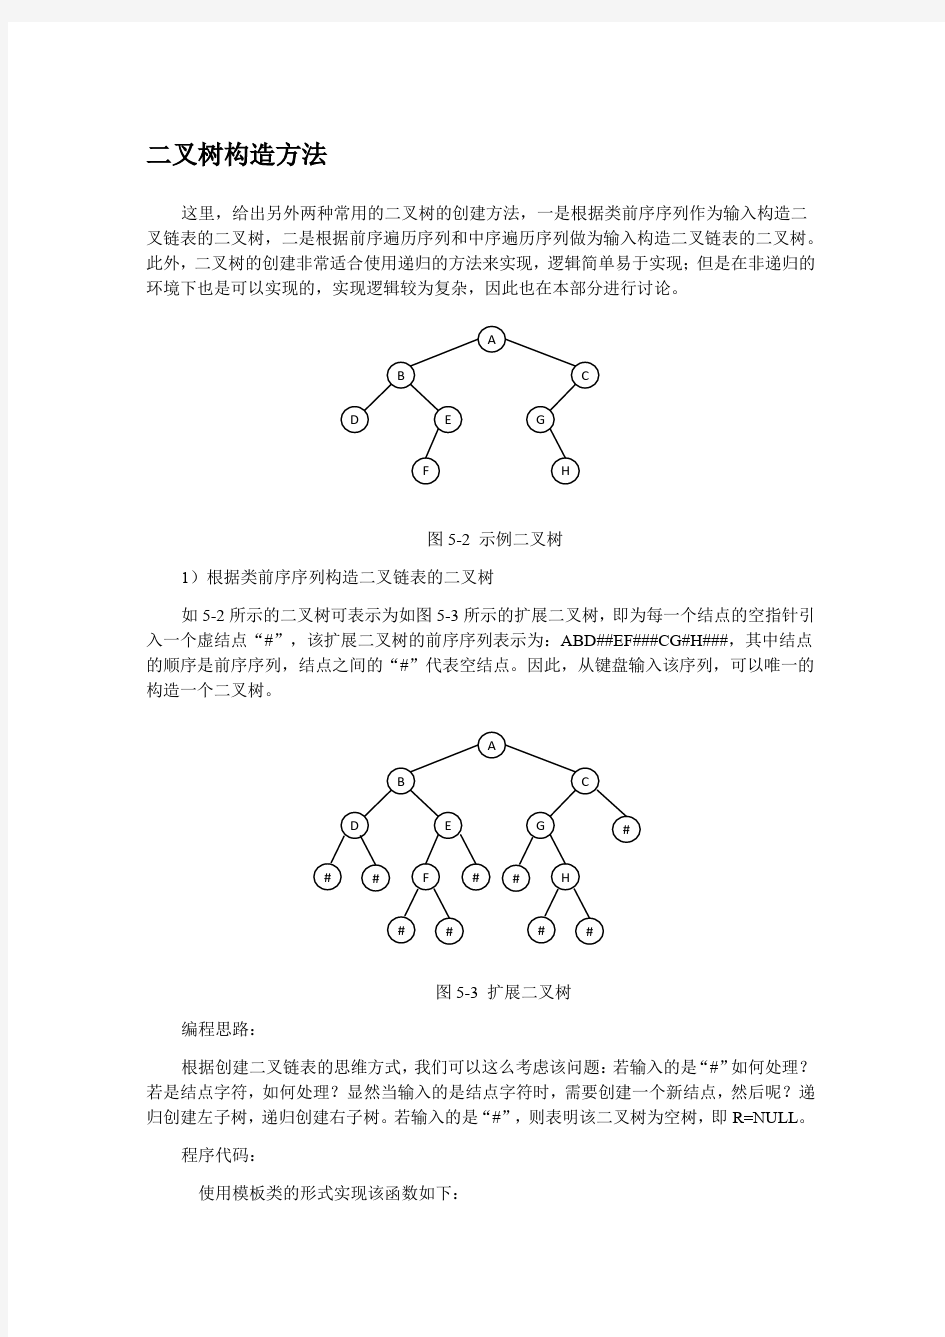 二叉树构造方法